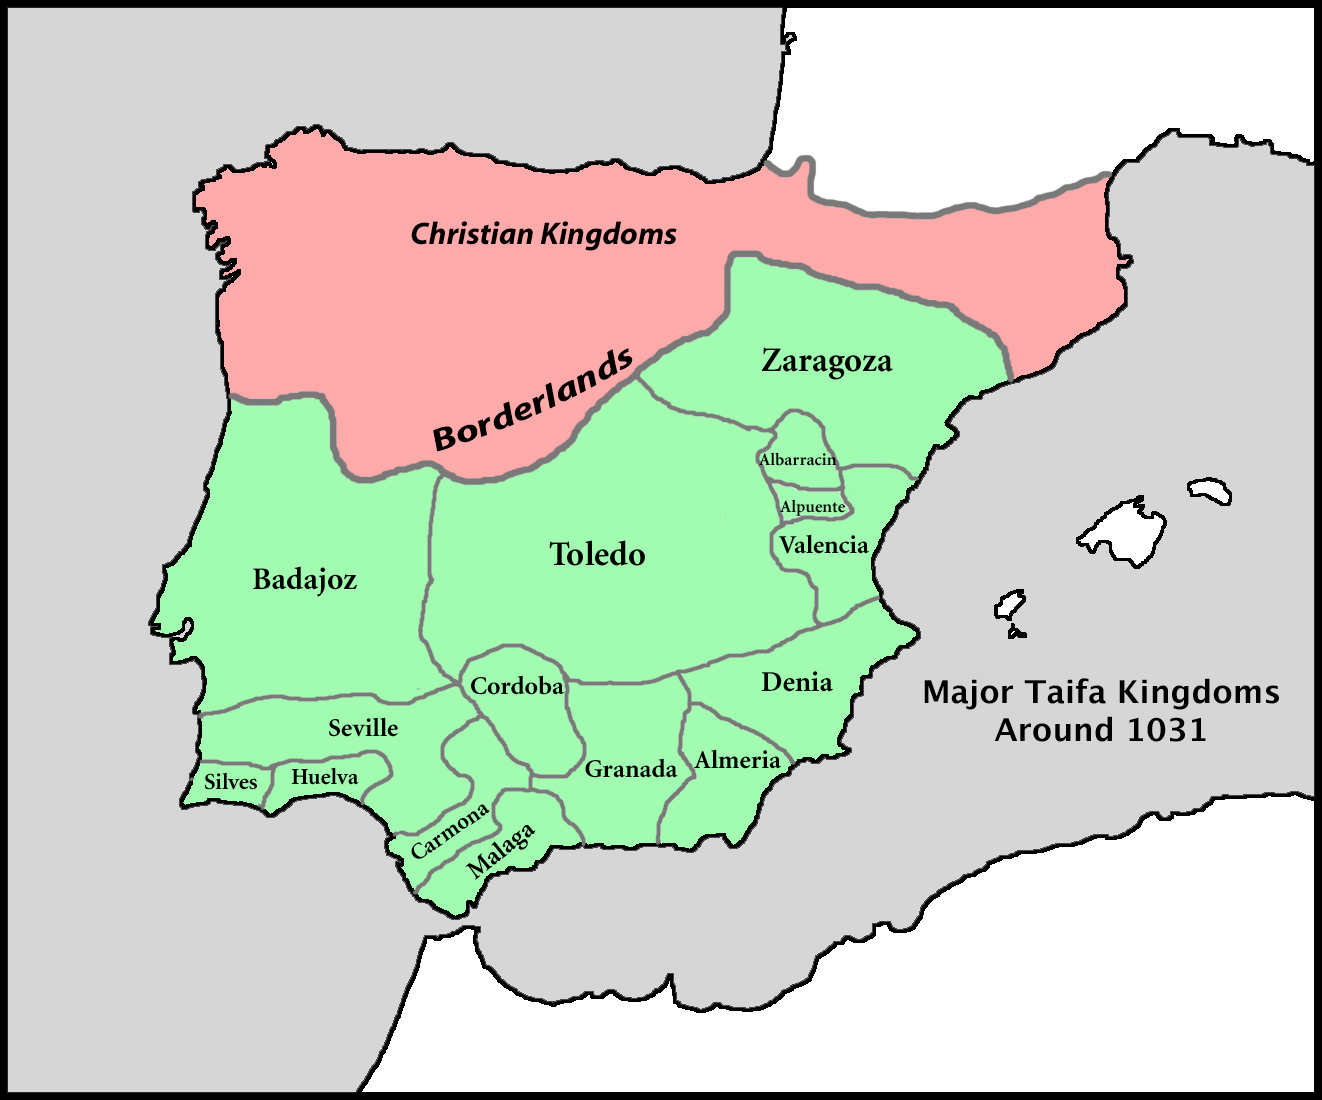 Taifa kingdom